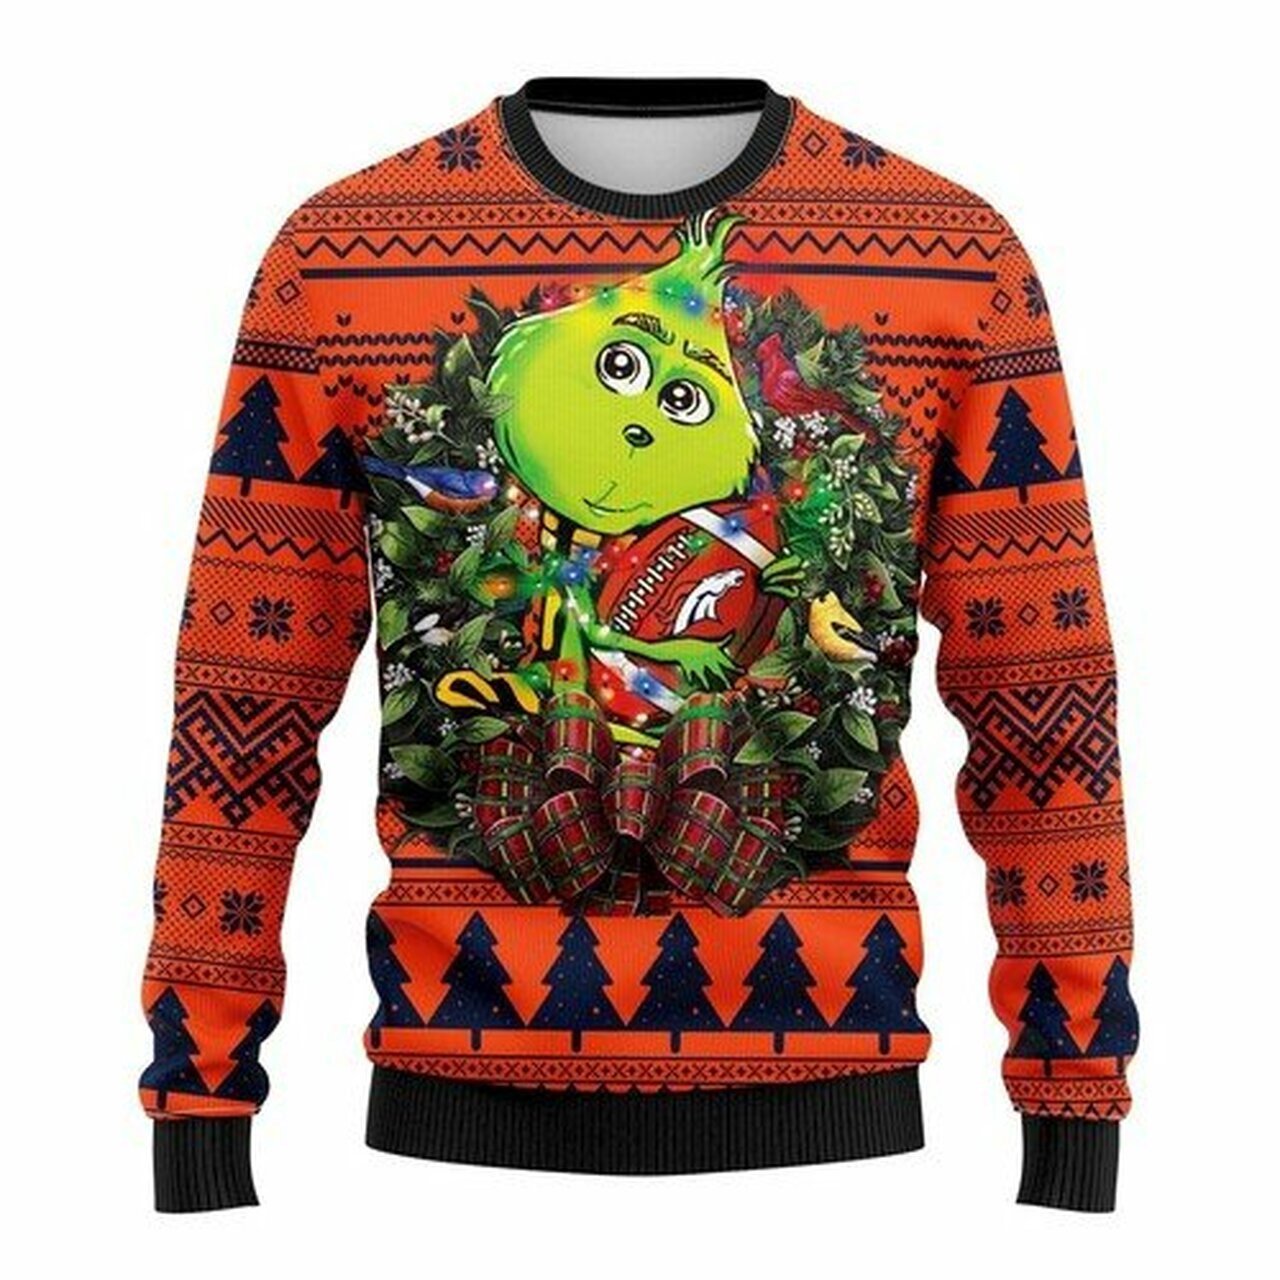 NFL Denver Brocos Grinch hug ugly christmas sweater